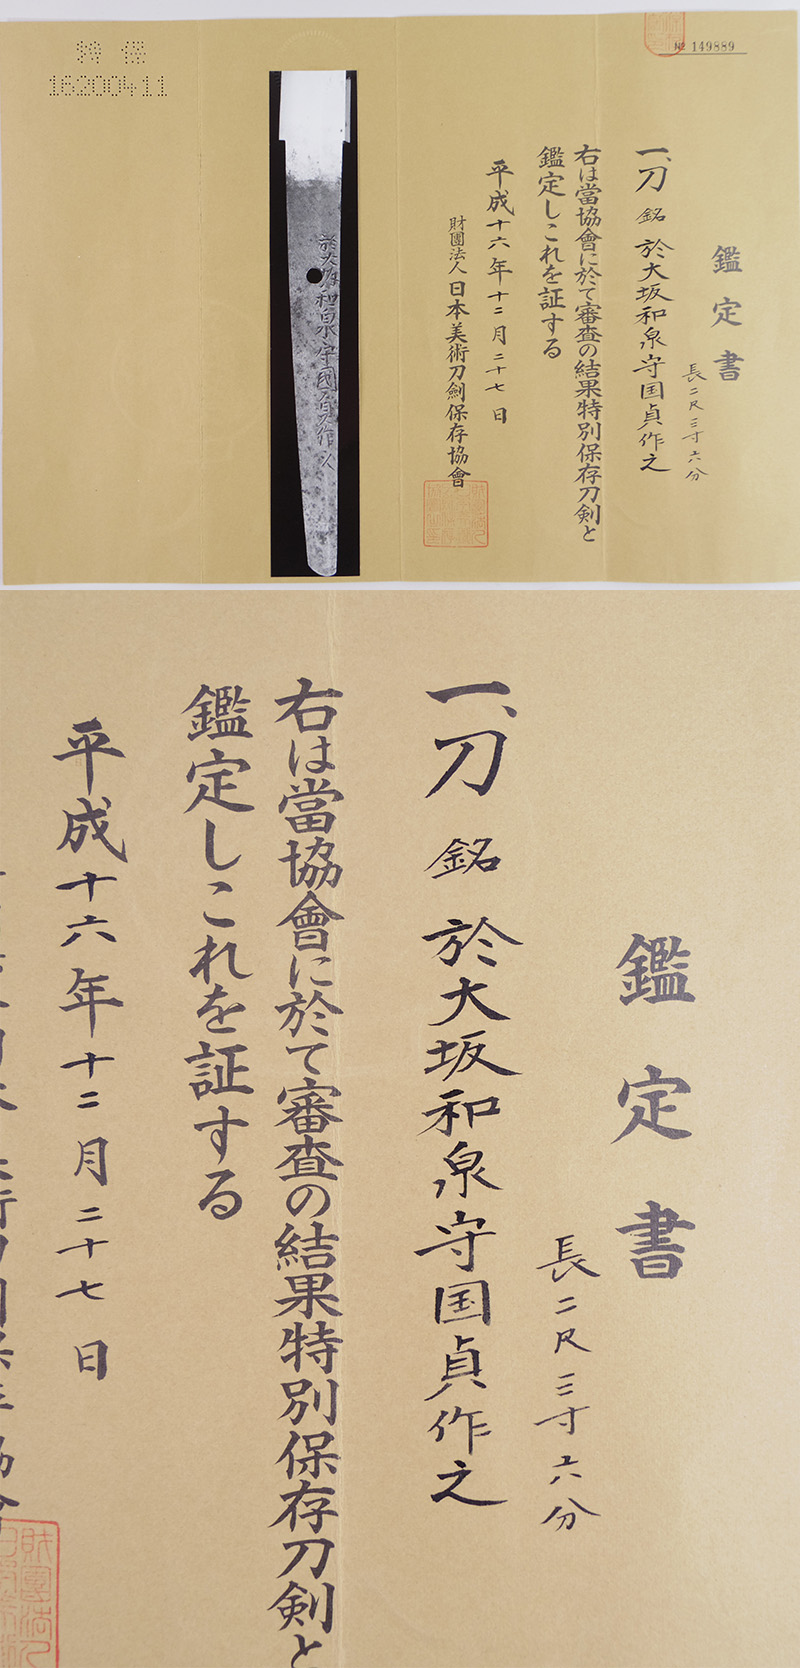 刀　於大阪和泉守国貞之作 (親国貞) (新刀上々作) (大業物) Picture of Certificate